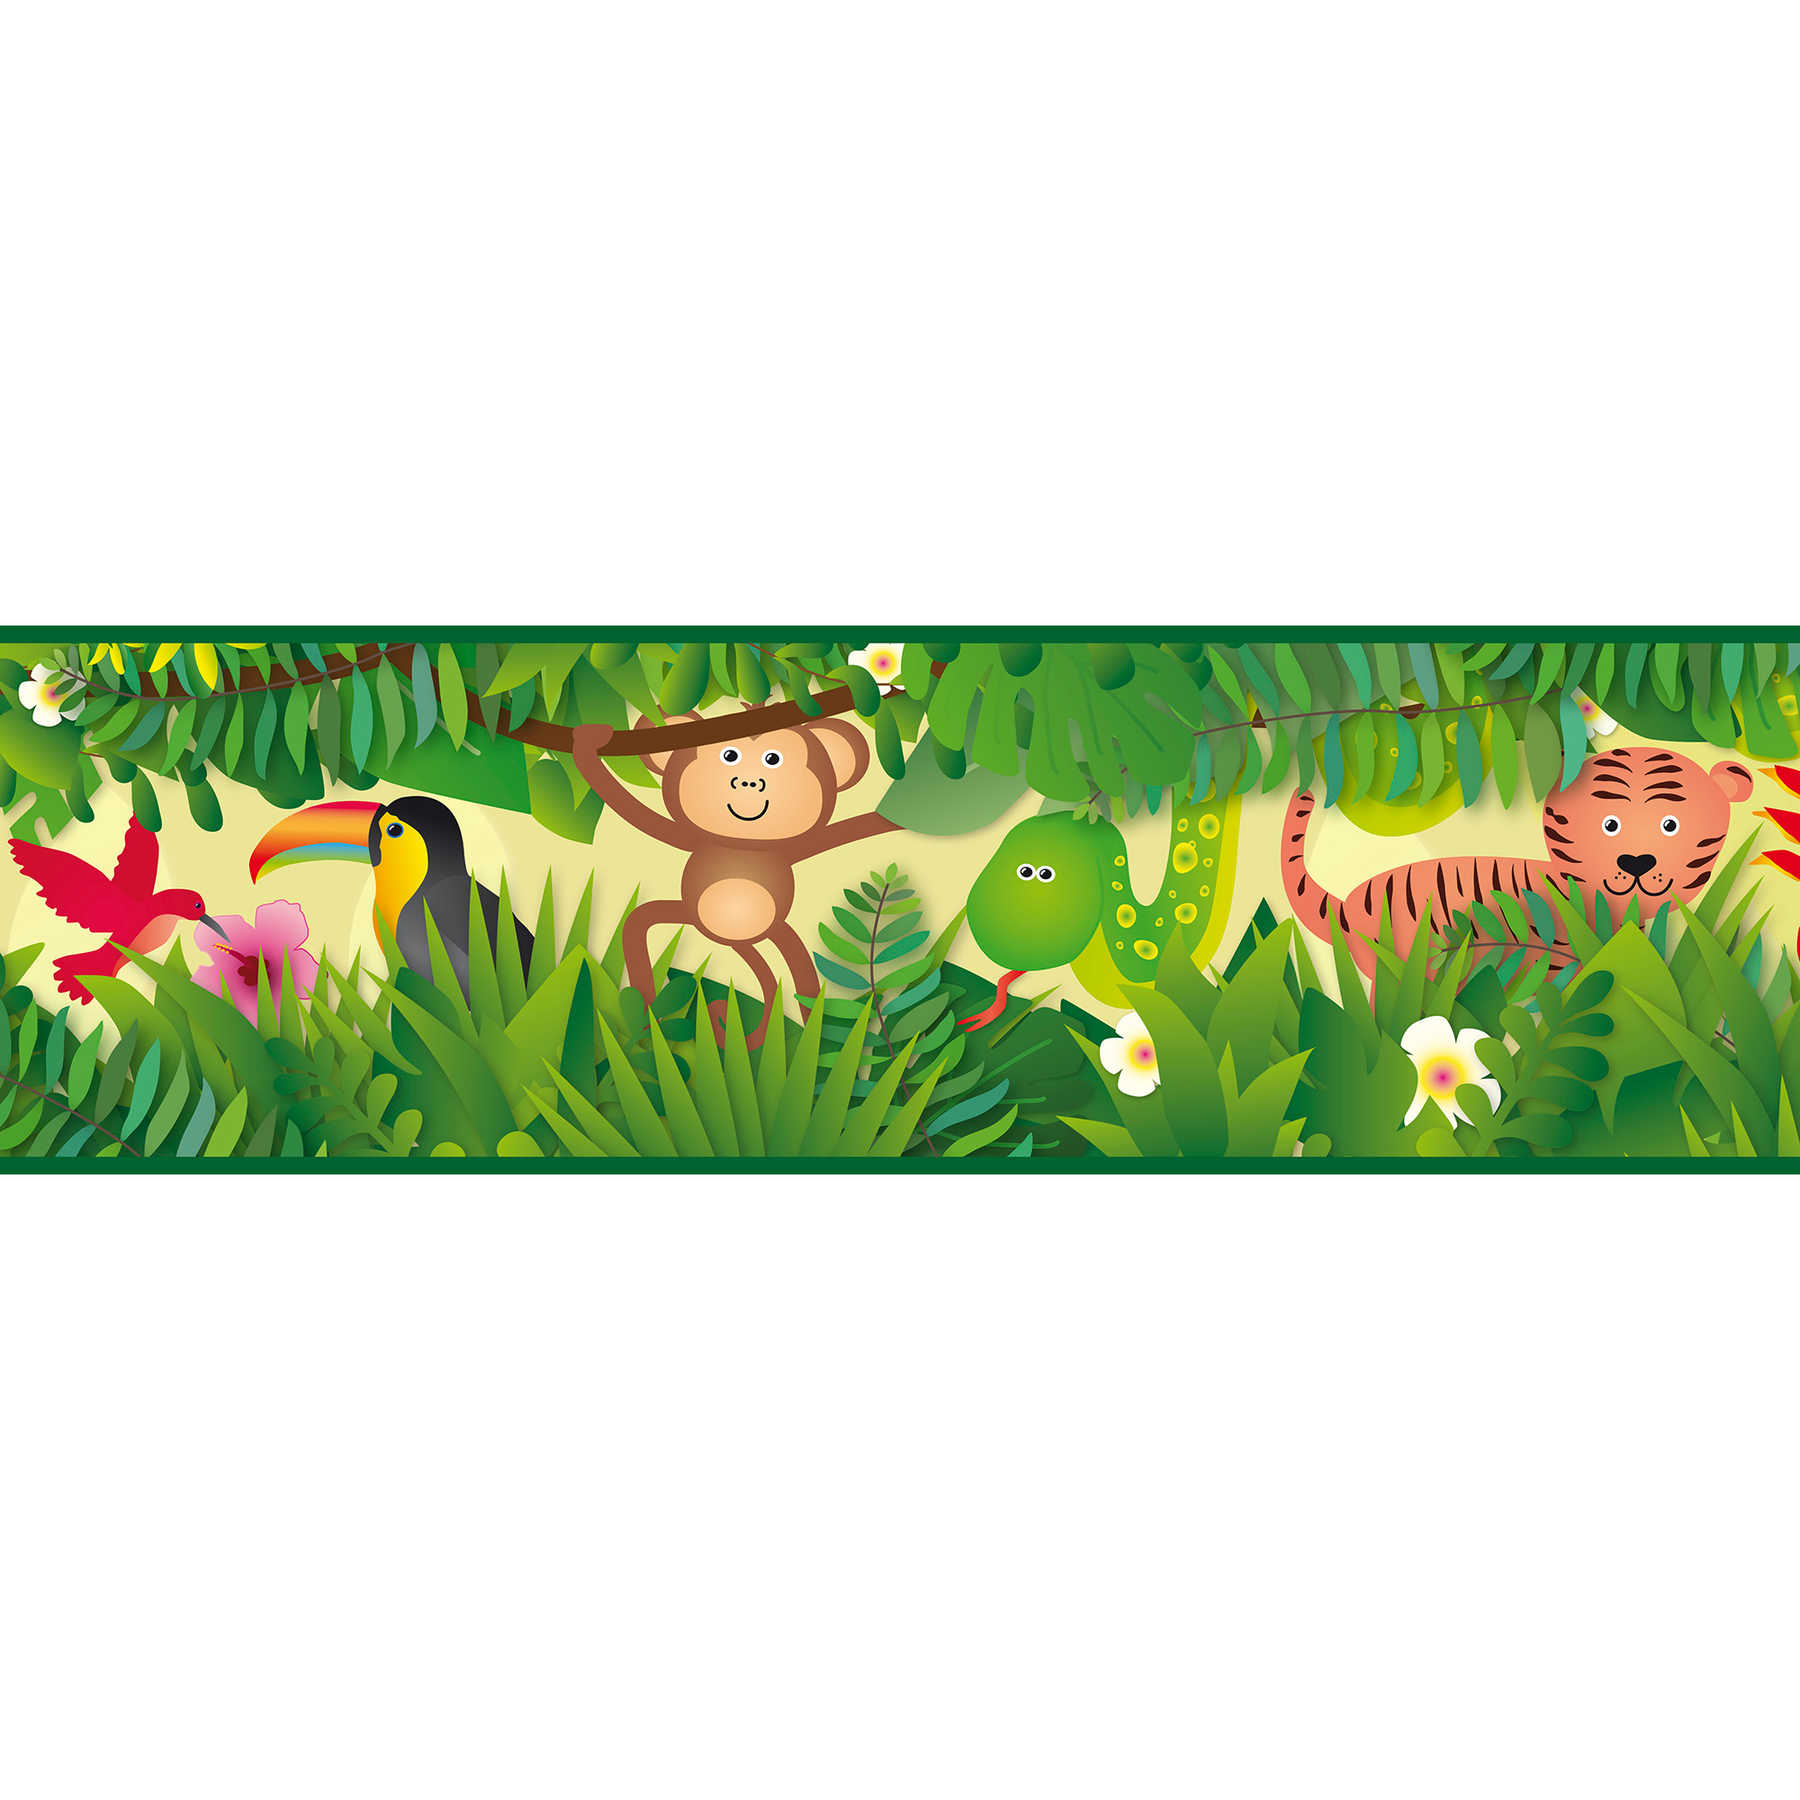 Jungen Tapete "Dschungel-Paradies" selbstklebende Borte – Grün, Braun, Rot
